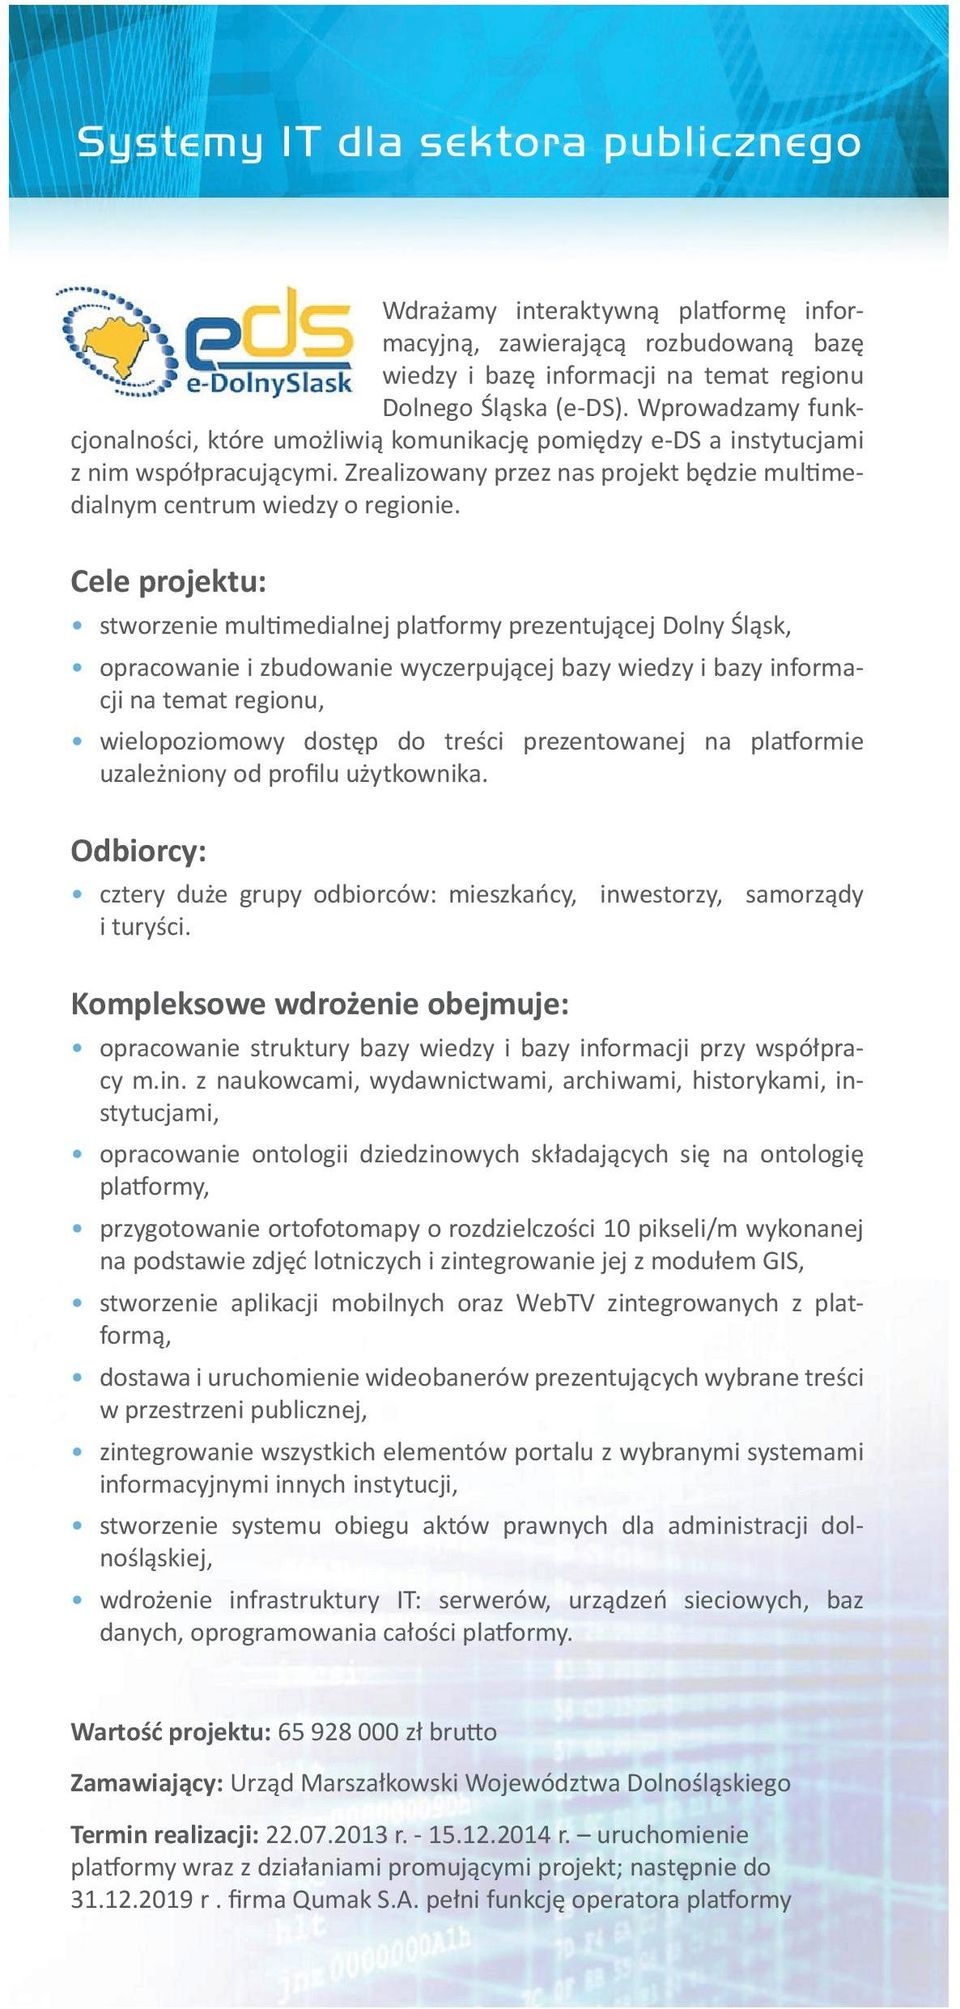 Cele projektu: stworzenie multimedialnej platformy prezentującej Dolny Śląsk, opracowanie i zbudowanie wyczerpującej bazy wiedzy i bazy informacji na temat regionu, wielopoziomowy dostęp do treści